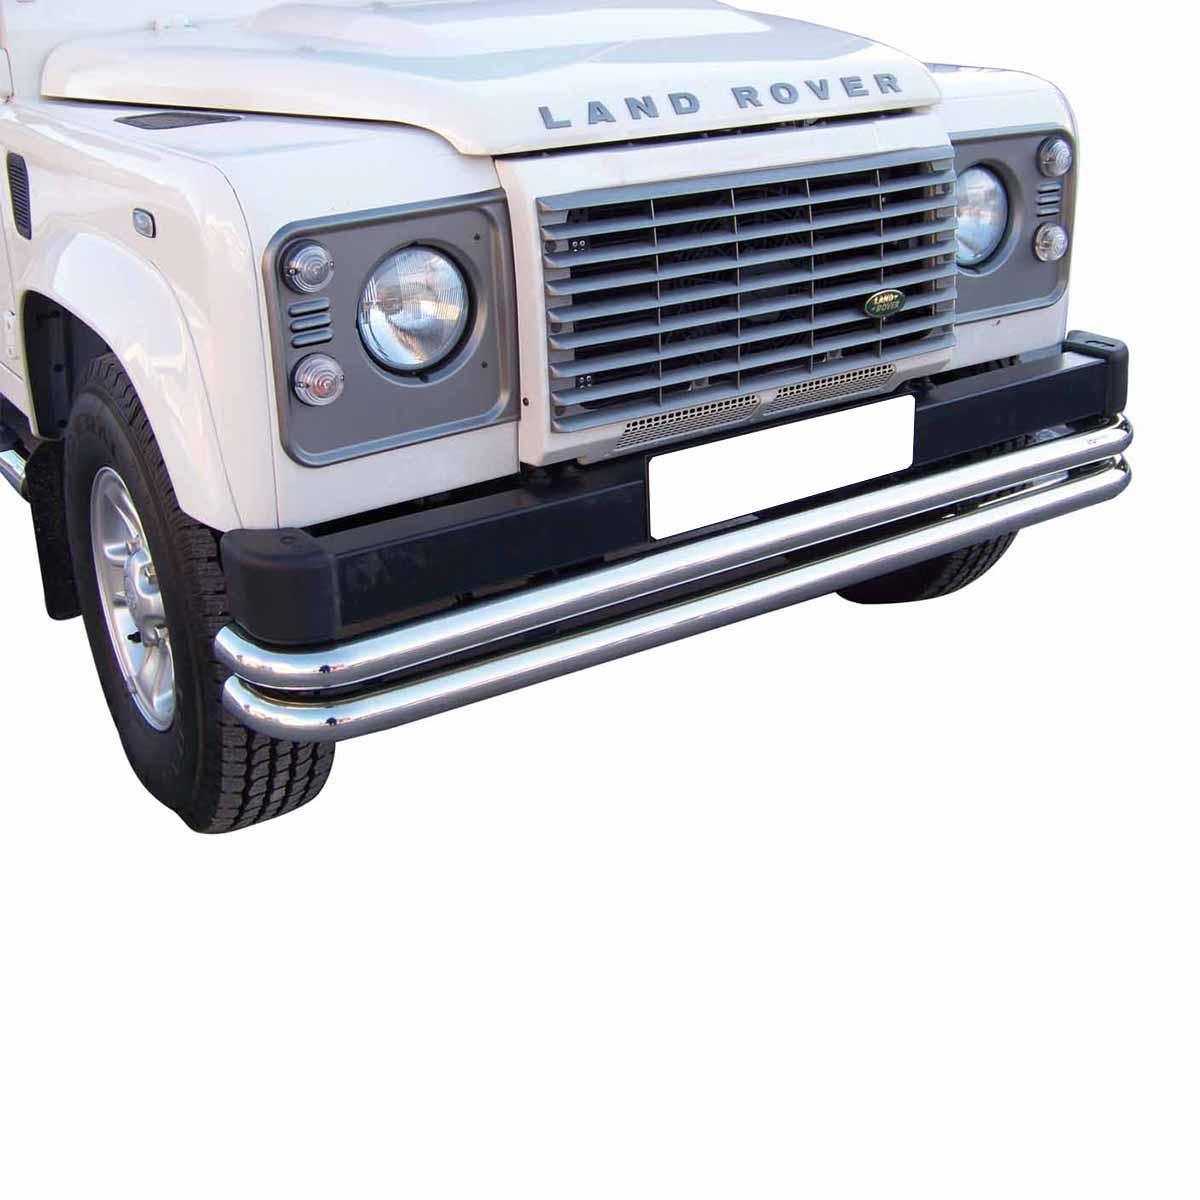 Zubehör und Tuning Frontschutz 2x63mm aus Edelstahl für Land Rover